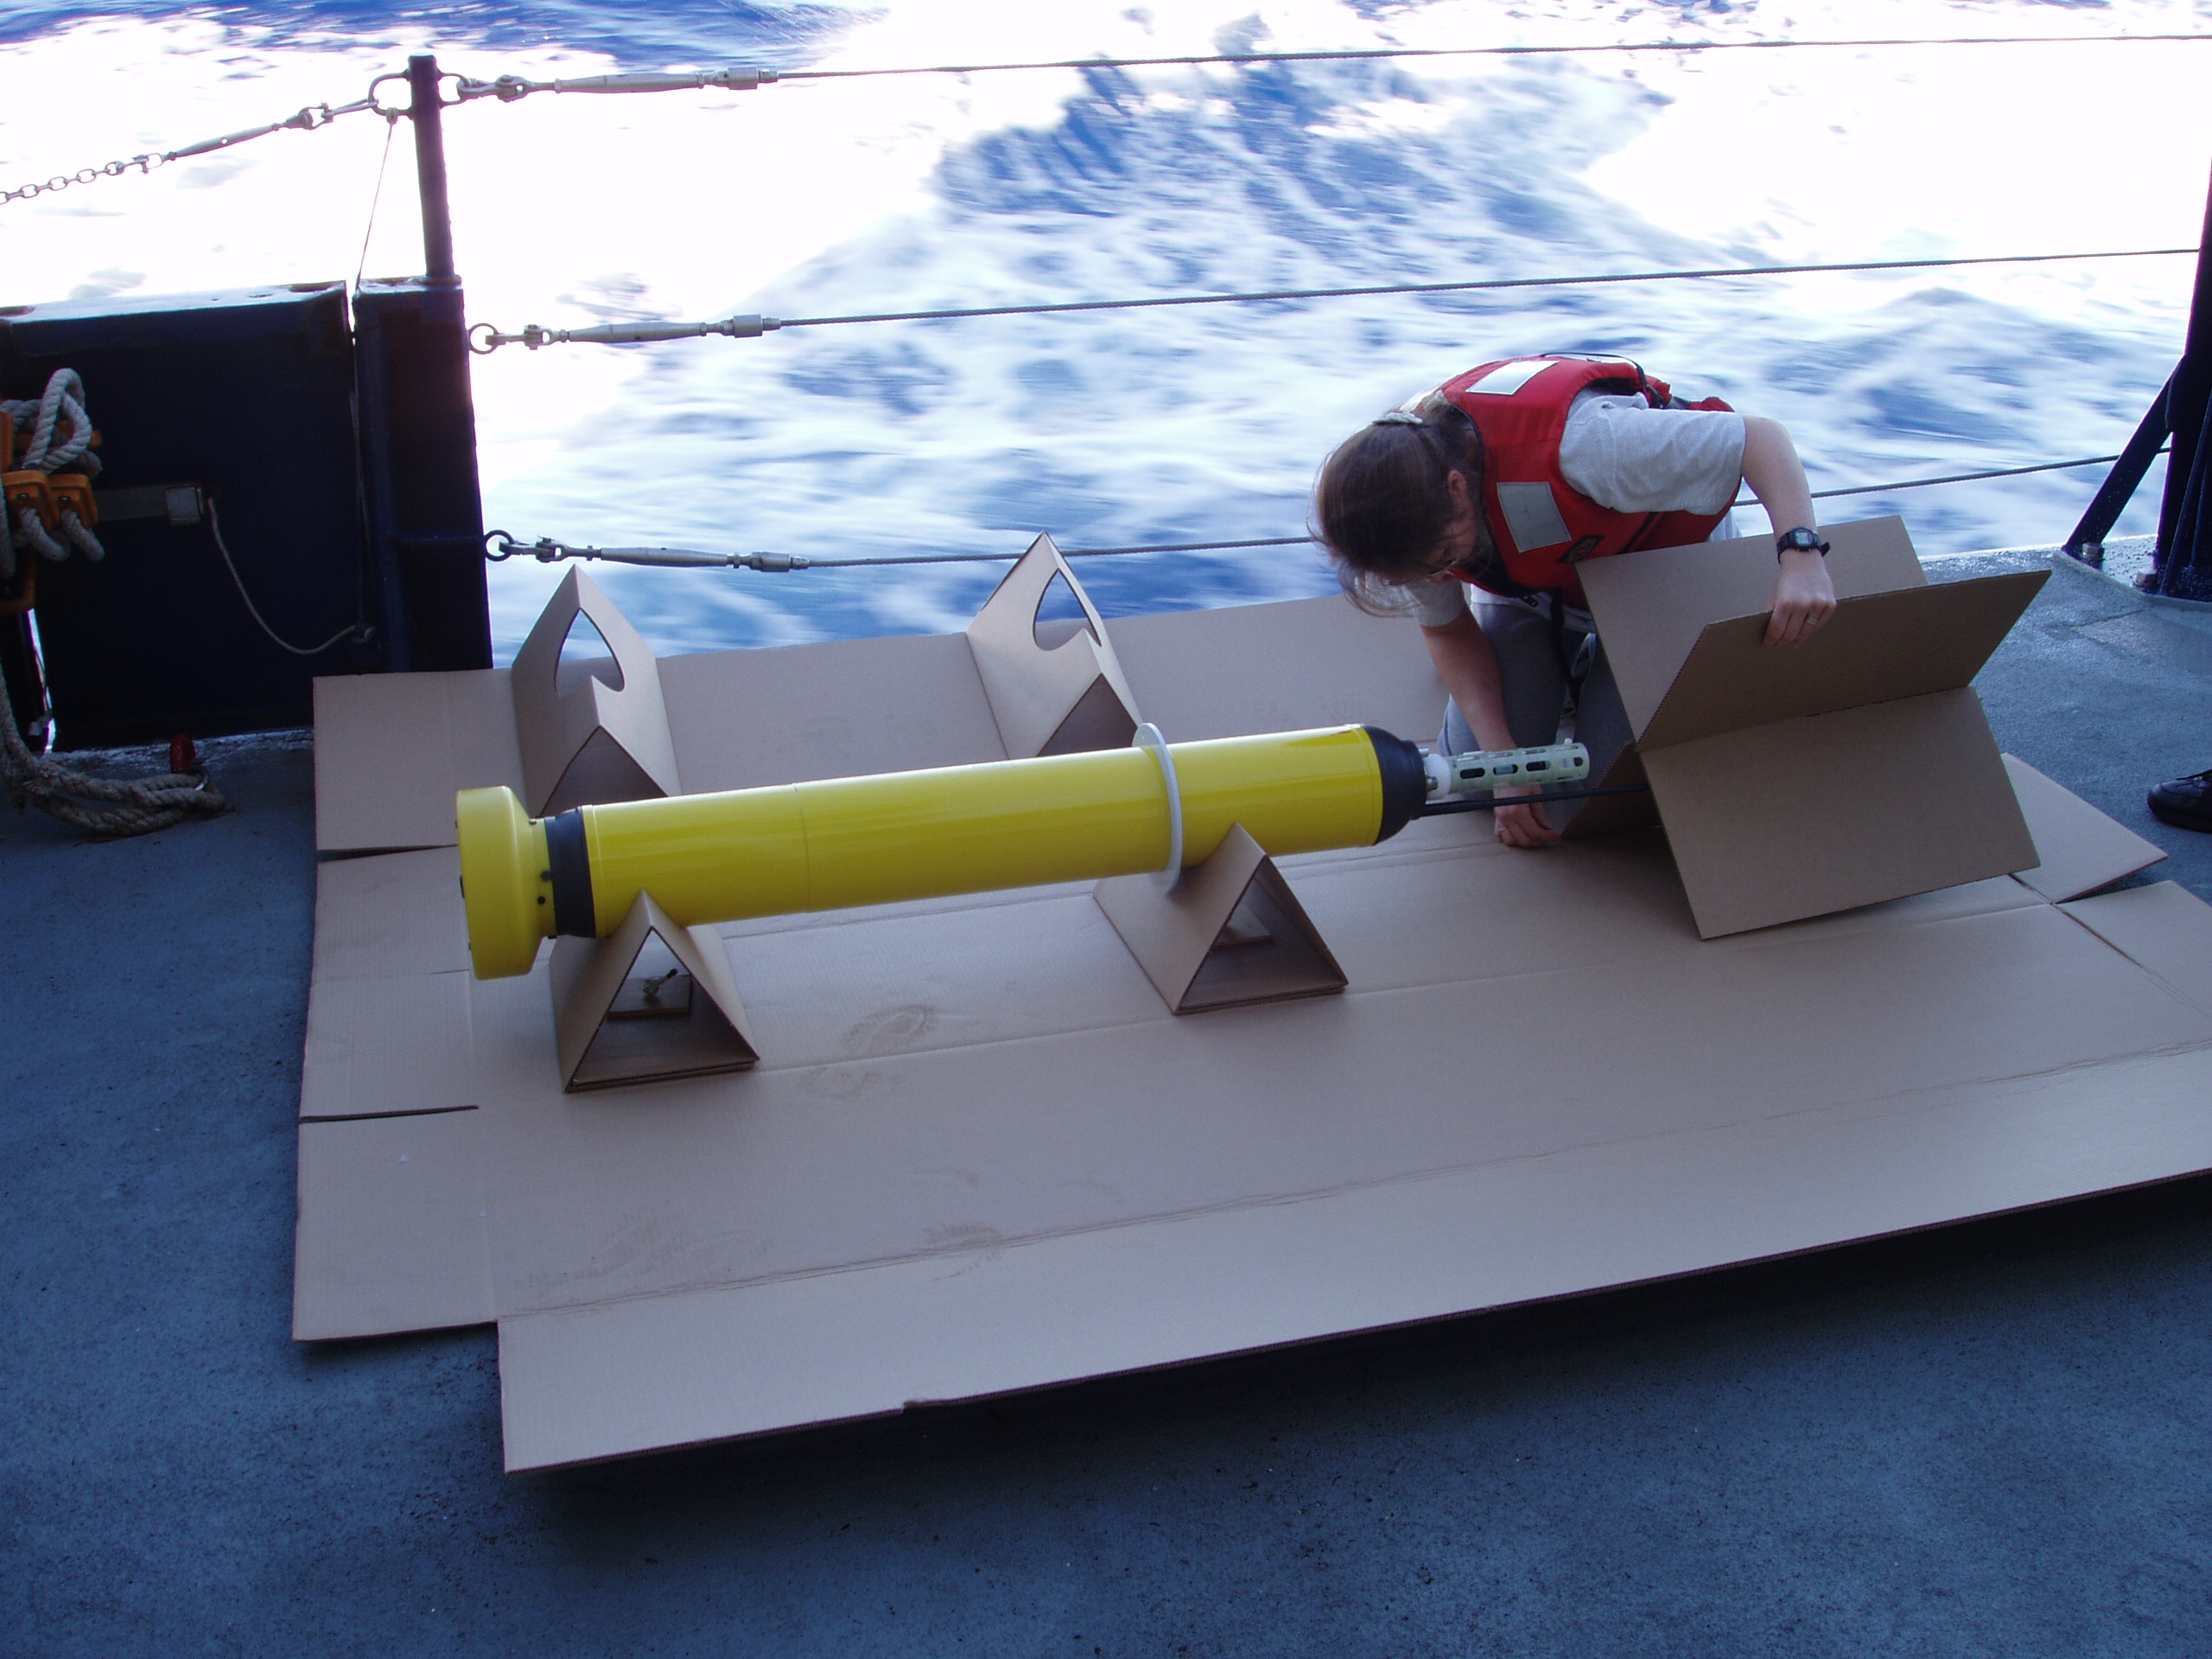 Zdjęcie: przygotowywanie pływaka Argo do umieszczenia w morzu. Na pokładzie statku leży ok. półtorametrowy, żółty cylinder z iglicą, nad nim pochyla się kobieta w kamizelce asekuracyjnej.